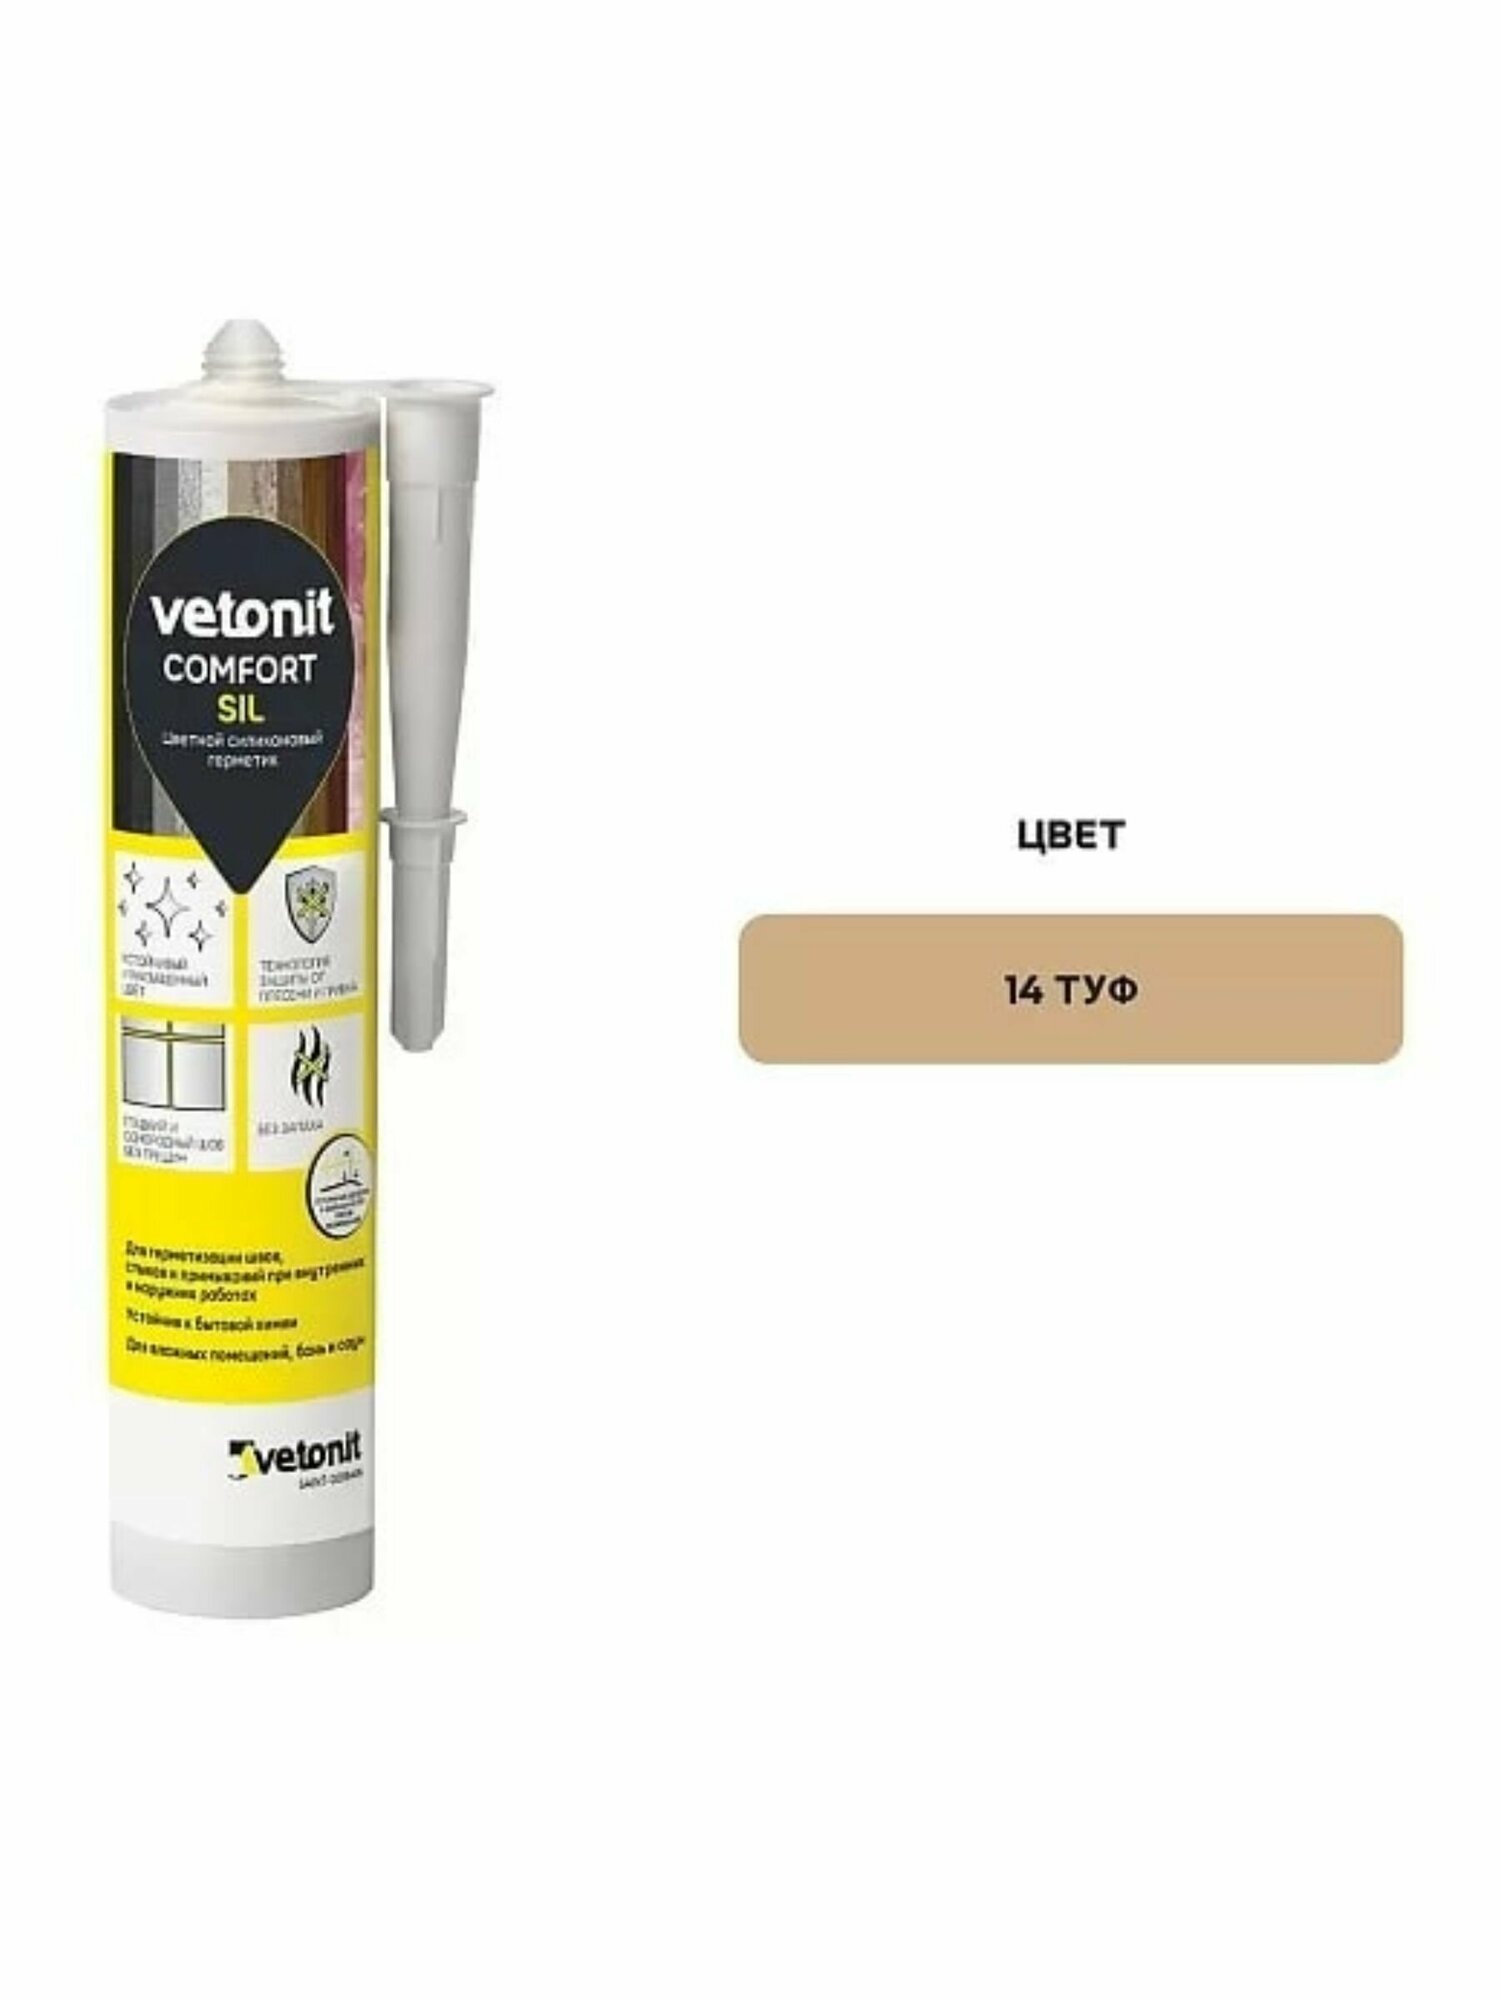 Vetonit Comfort Sil цветной силиконовый герметик 14 туф, 280 мл